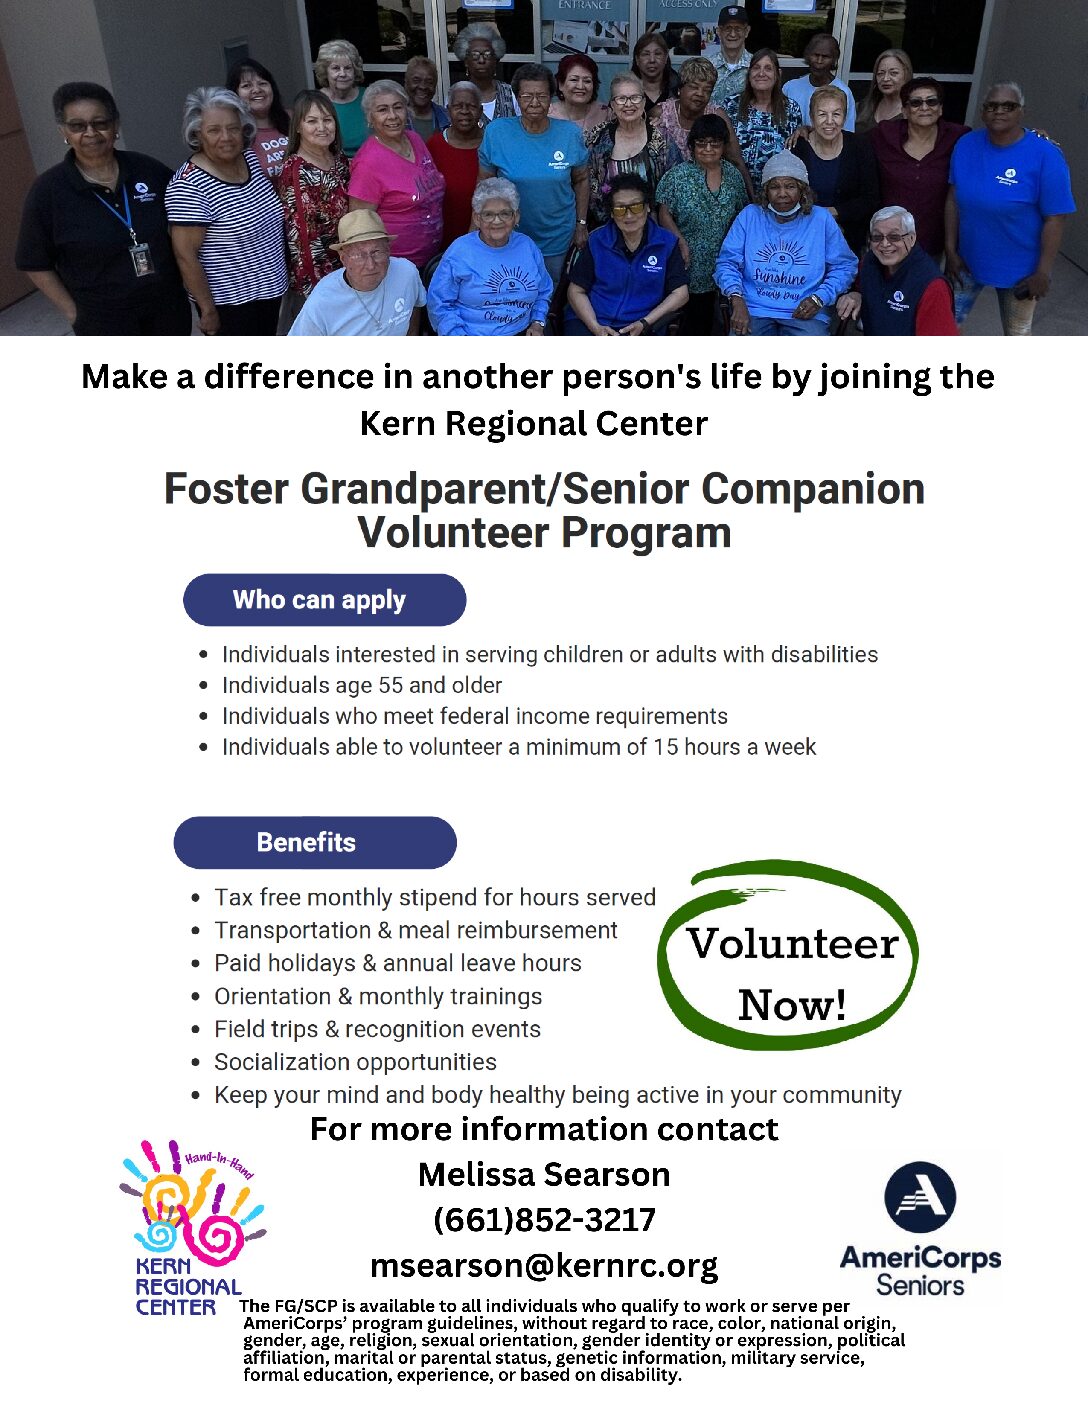 Foster Grandparent/Senior Companion Volunteer Program